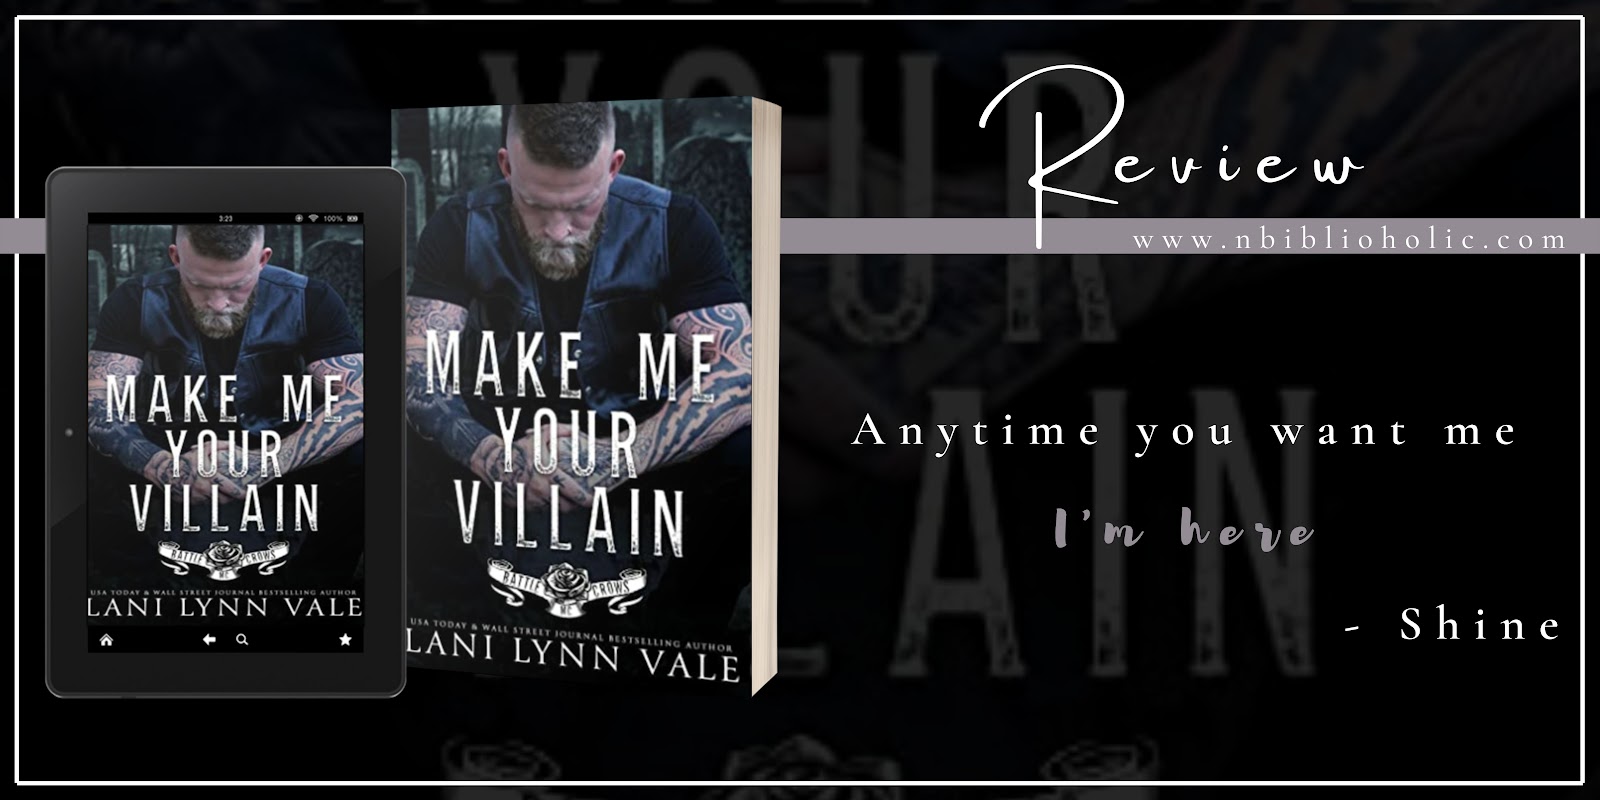 Make Me Your Villain by Lani Lynn Vale